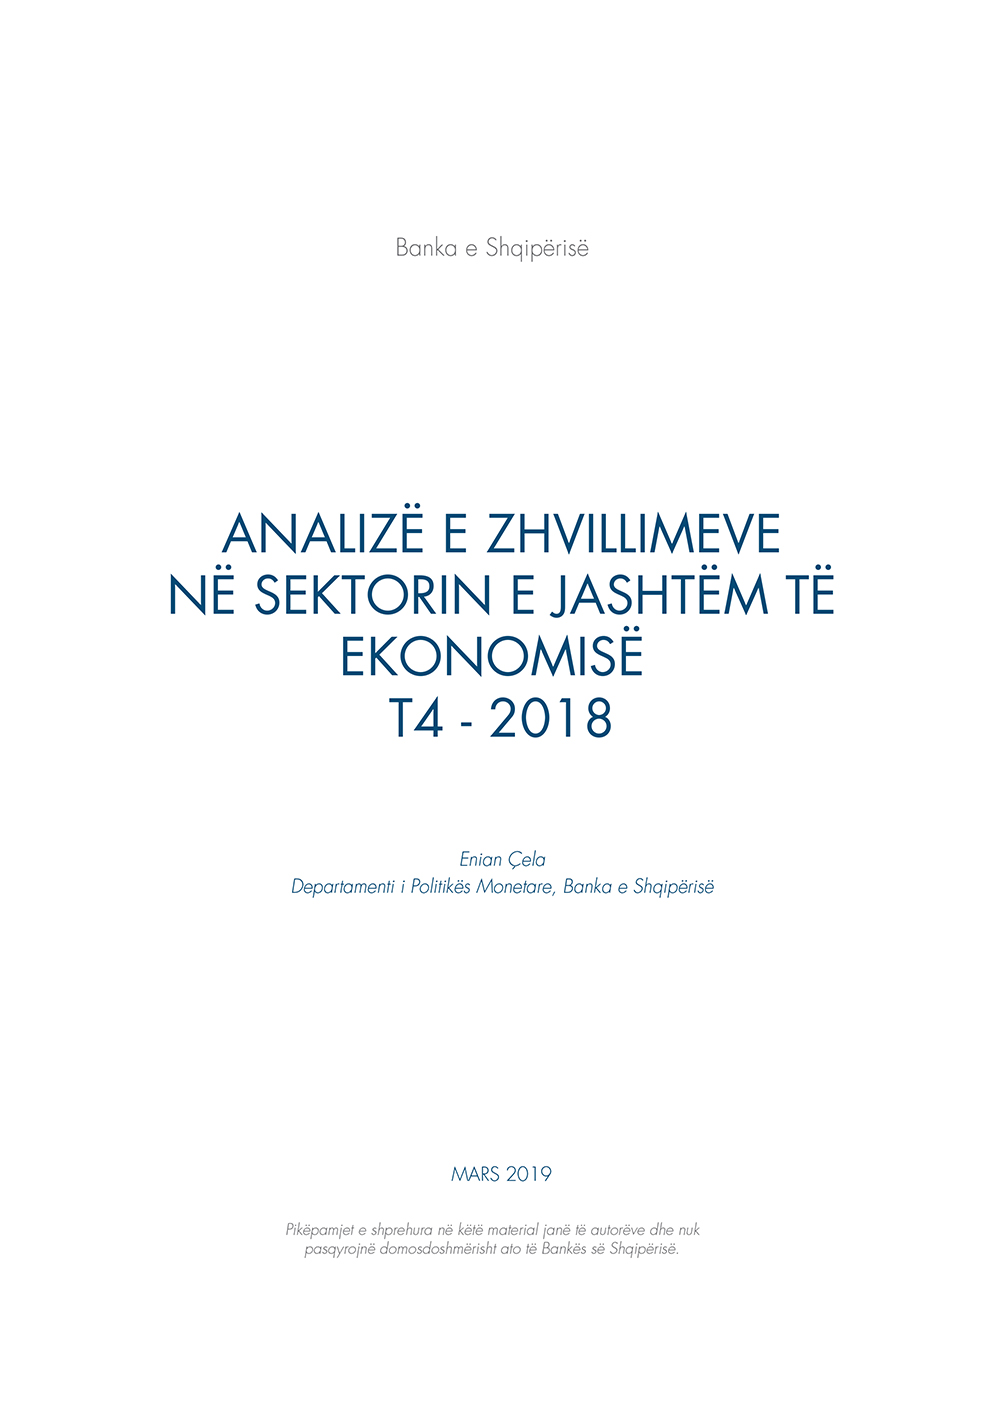 Analiza e ''Zhvillimeve në sektorin e jashtëm të ekonomisë'' T4-2018